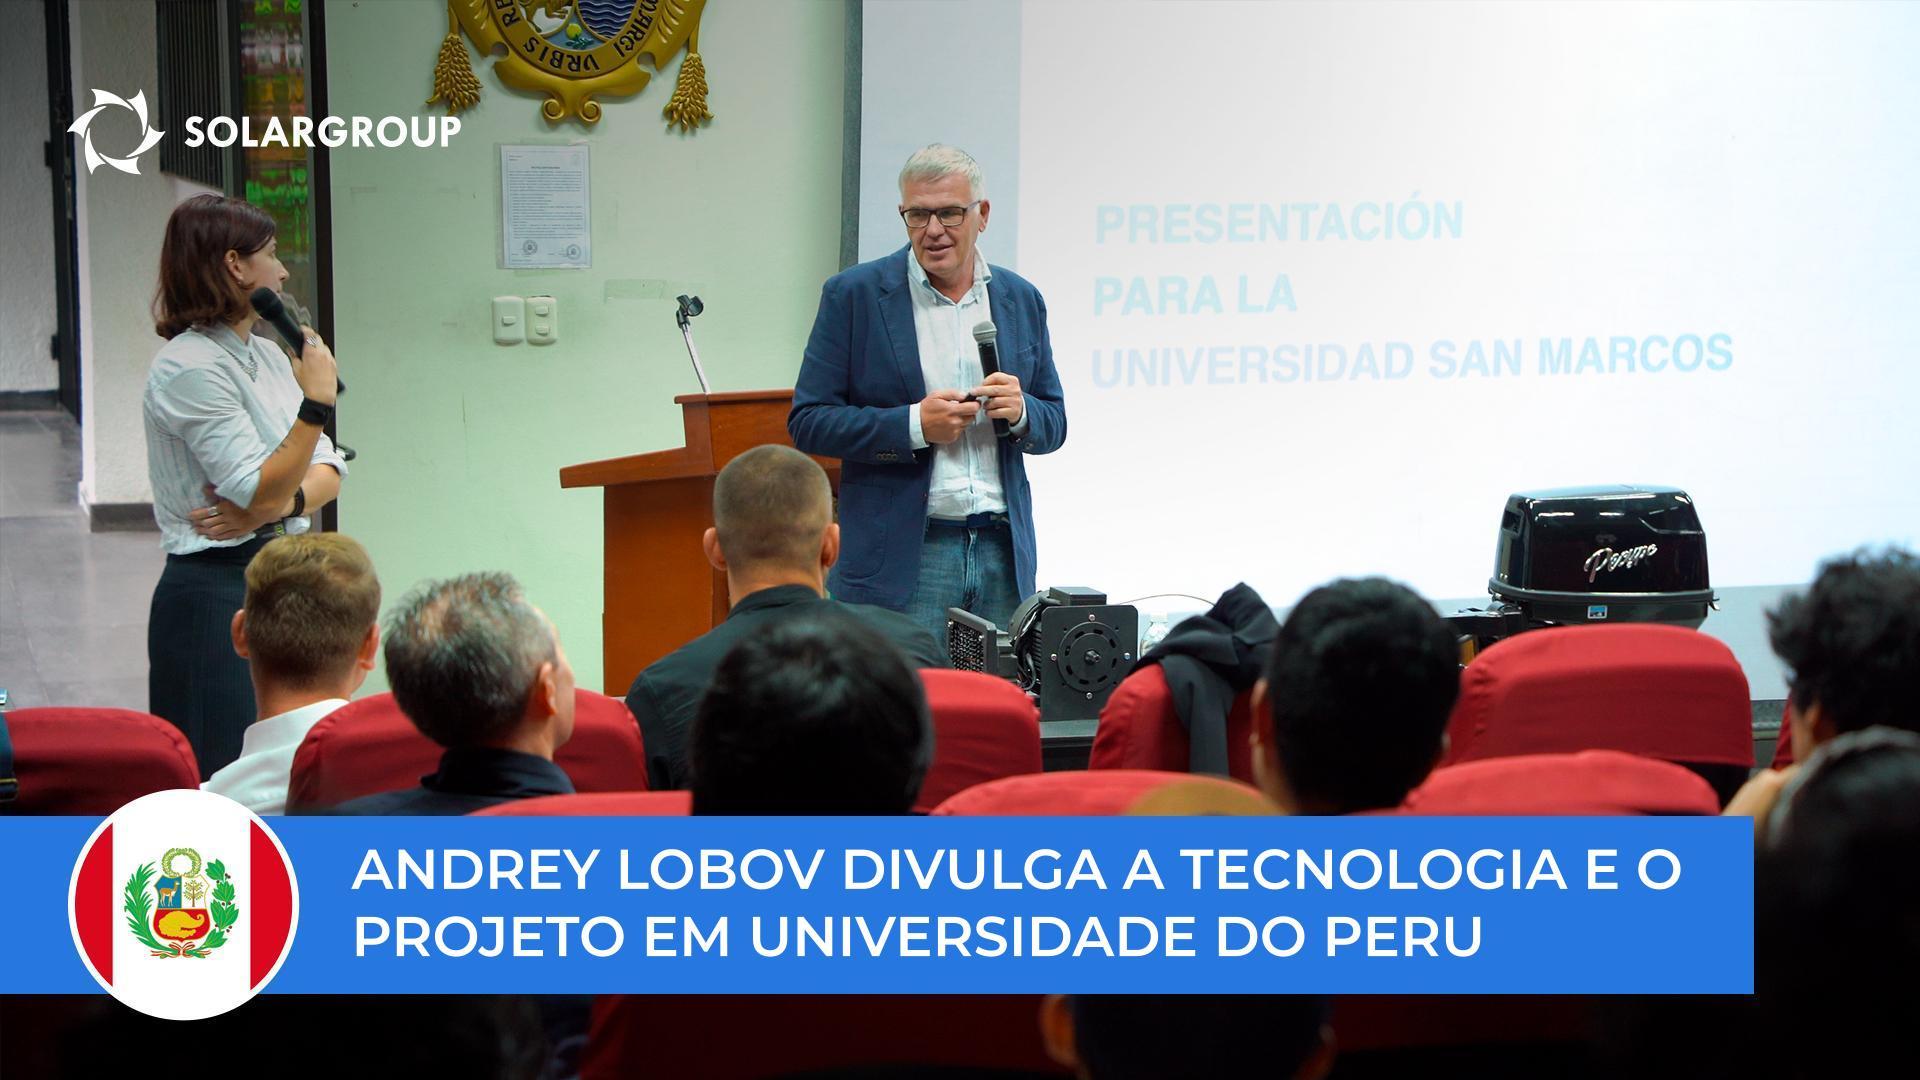 Andrey Lobov divulgou a tecnologia e o projeto a estudantes e professores na Universidade de San Marcos